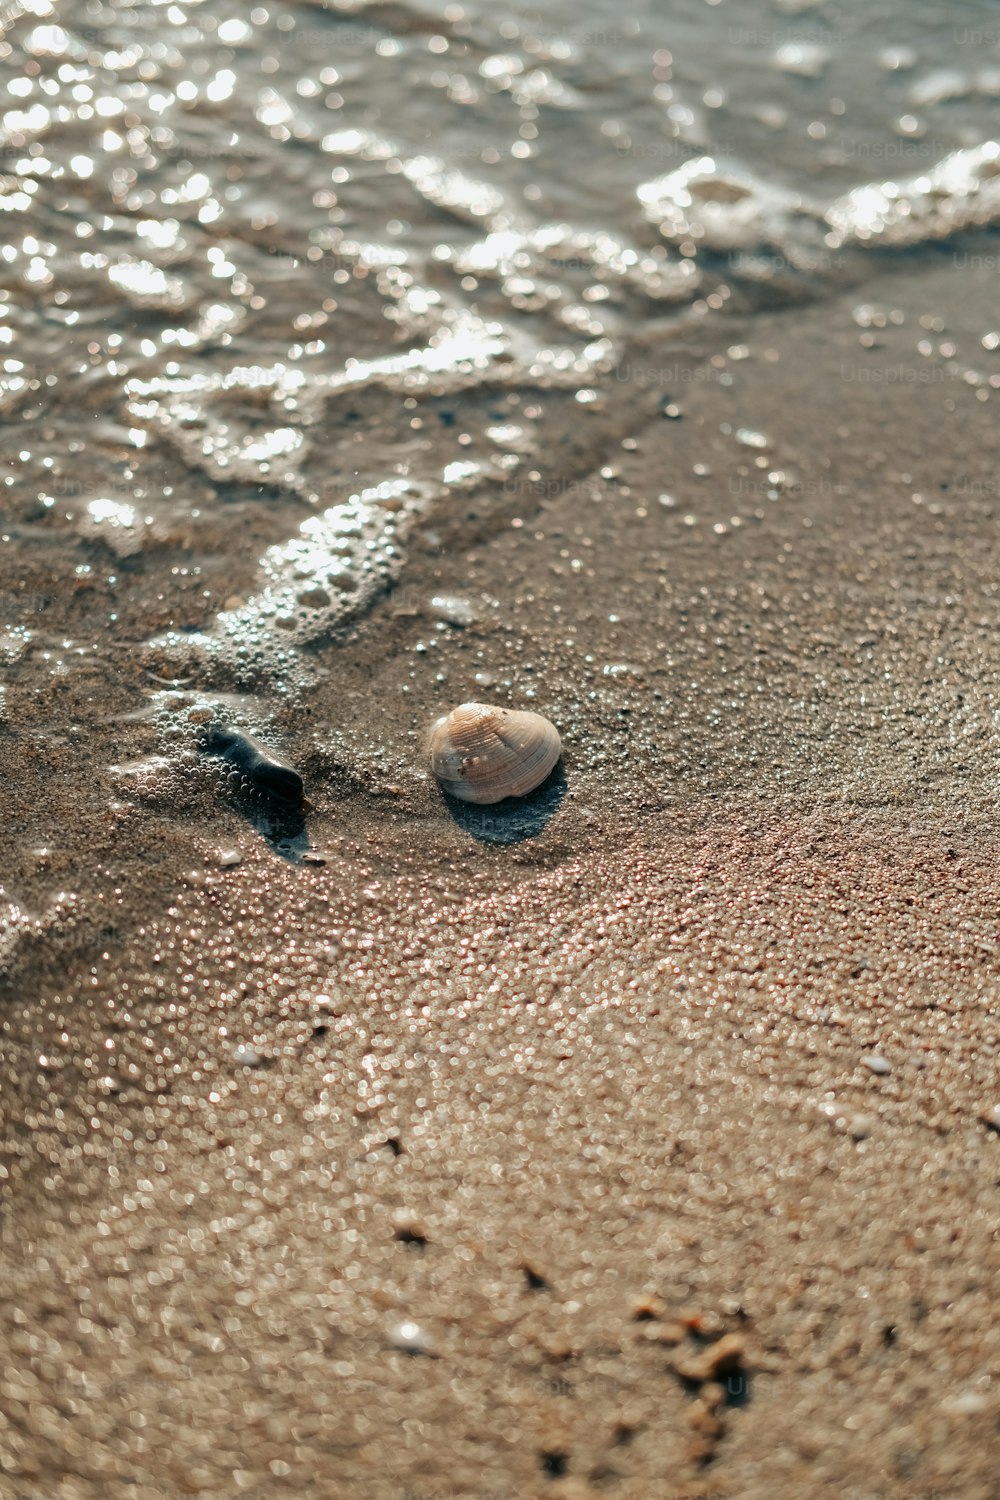 Many Small Shells Found On Seashore Stock Photo 2342979417